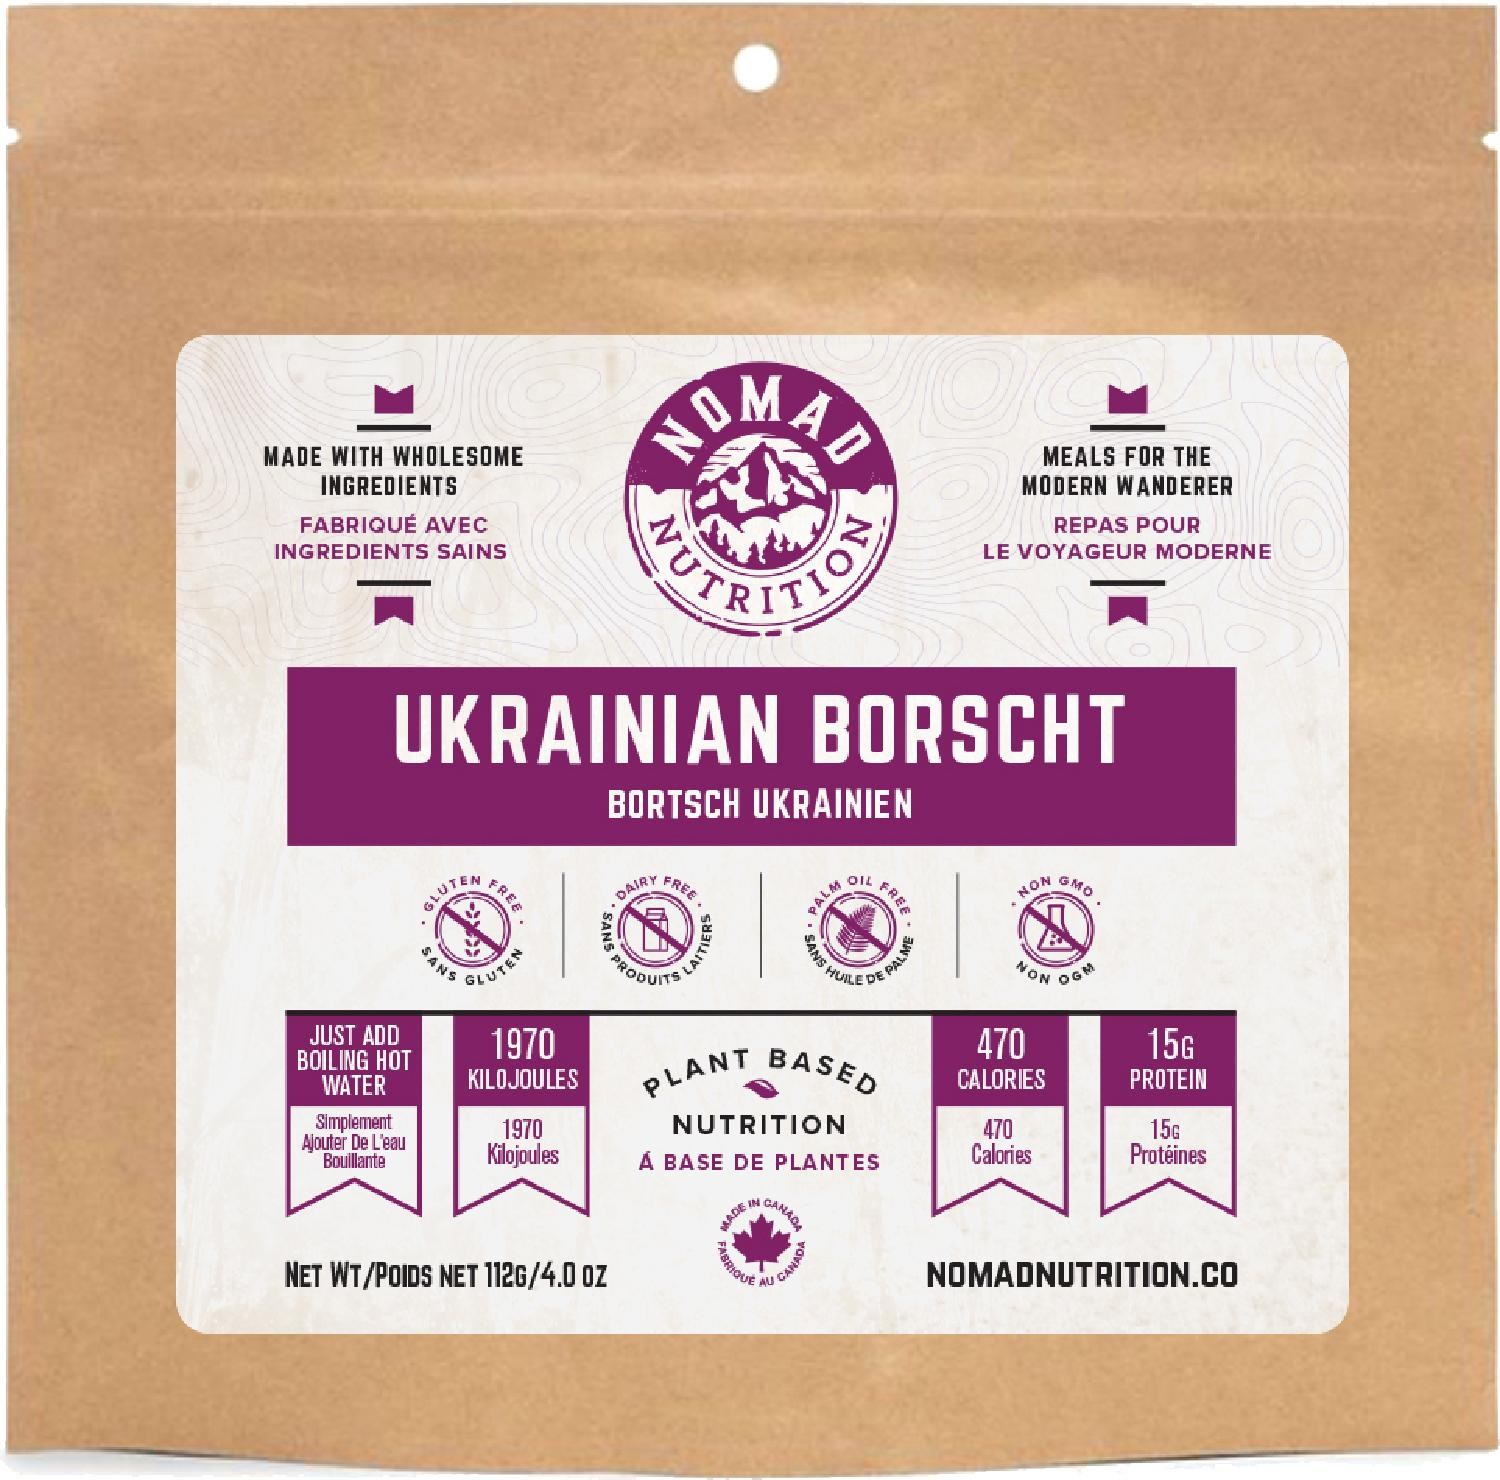 Украинский борщ – 1 порция Nomad Nutrition борщ со свежей капустой и мясом охлажденный деликатеска 250г